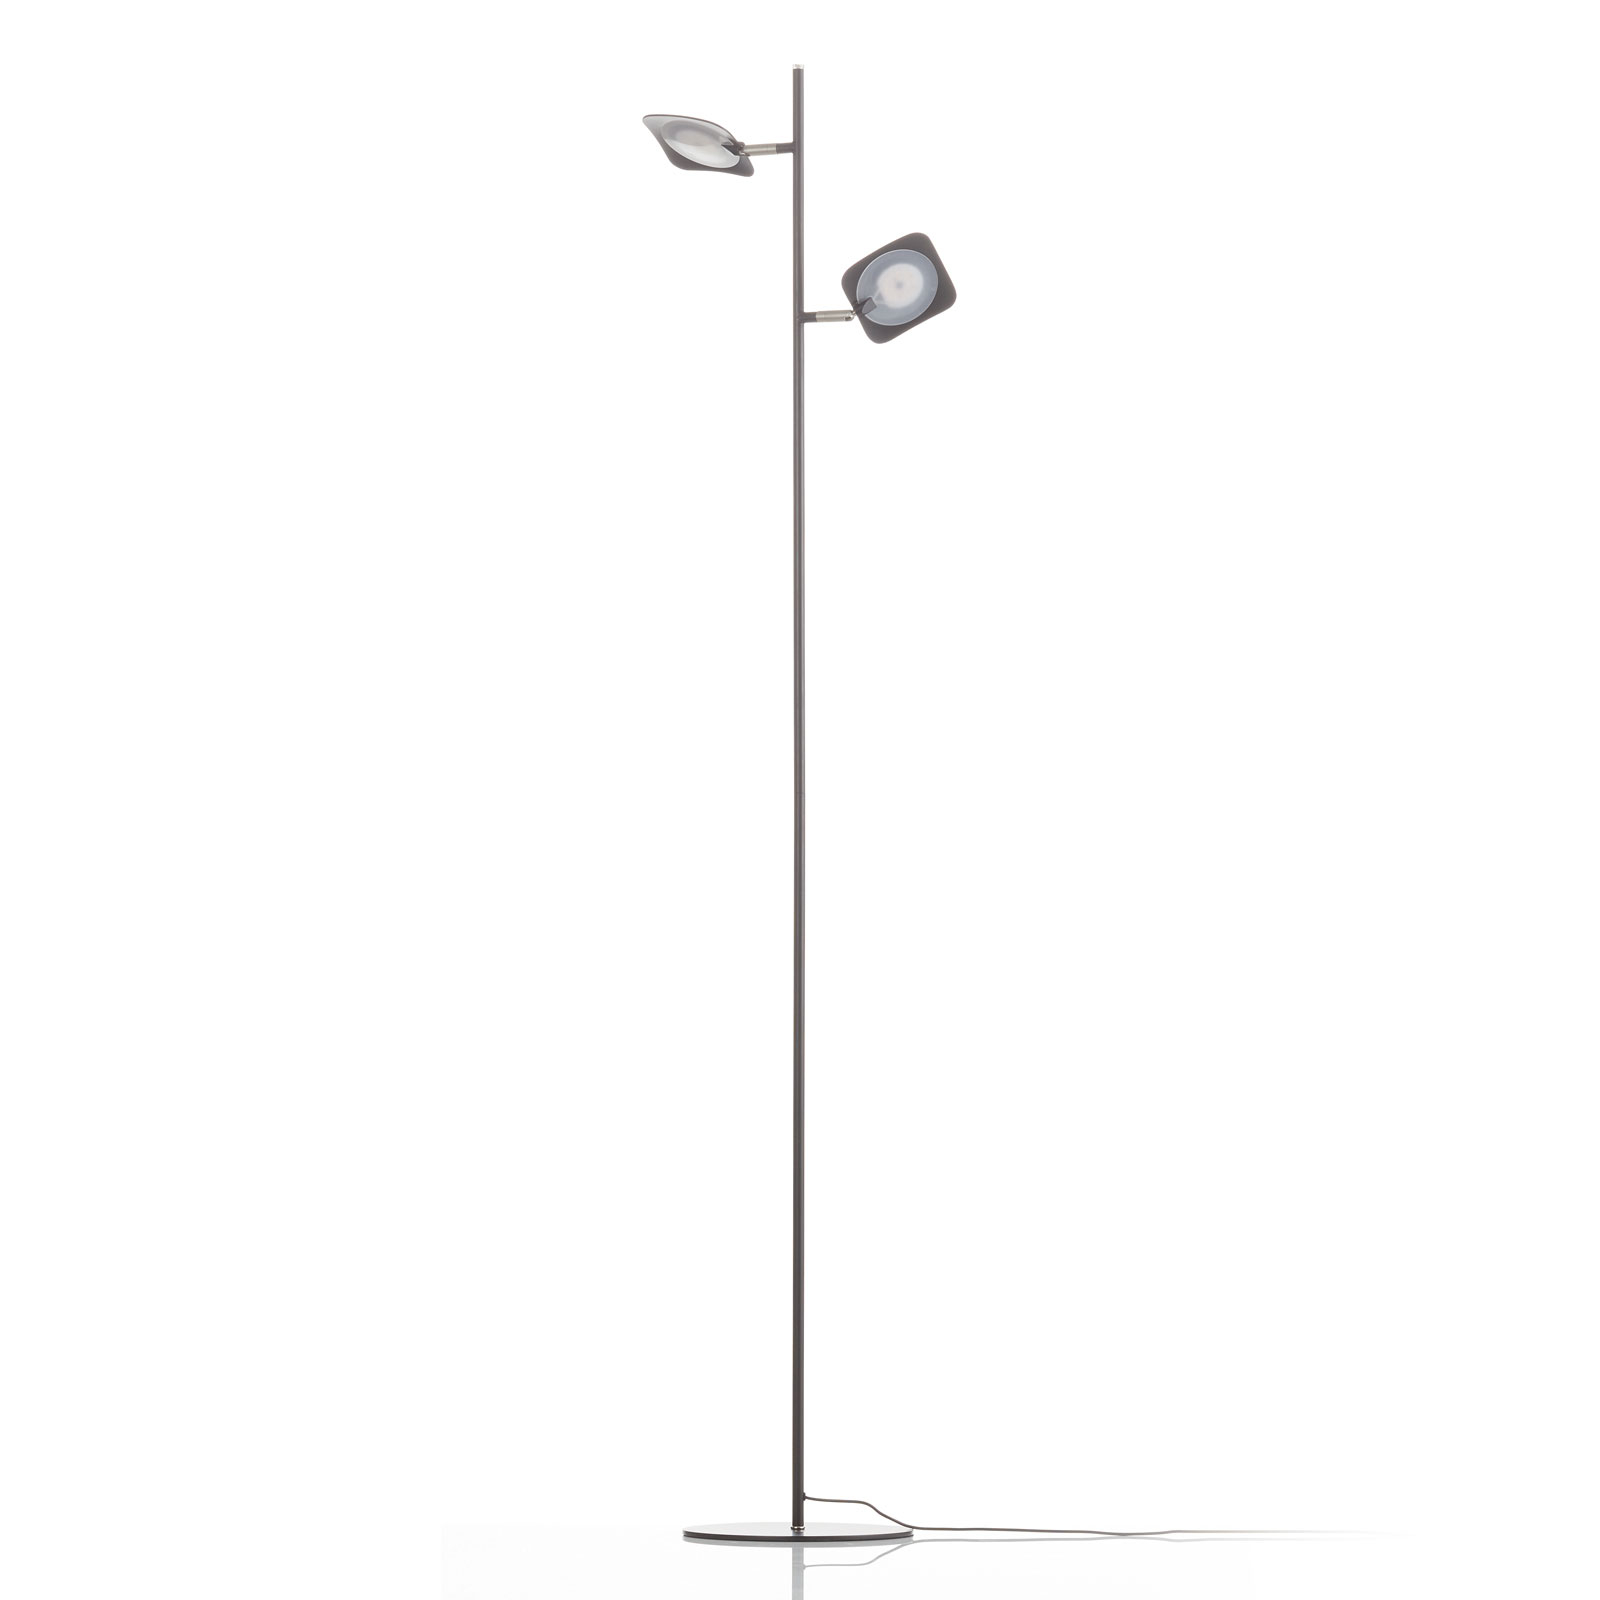 Lampa stojąca LED Raggio, 2-punktowa, czarna